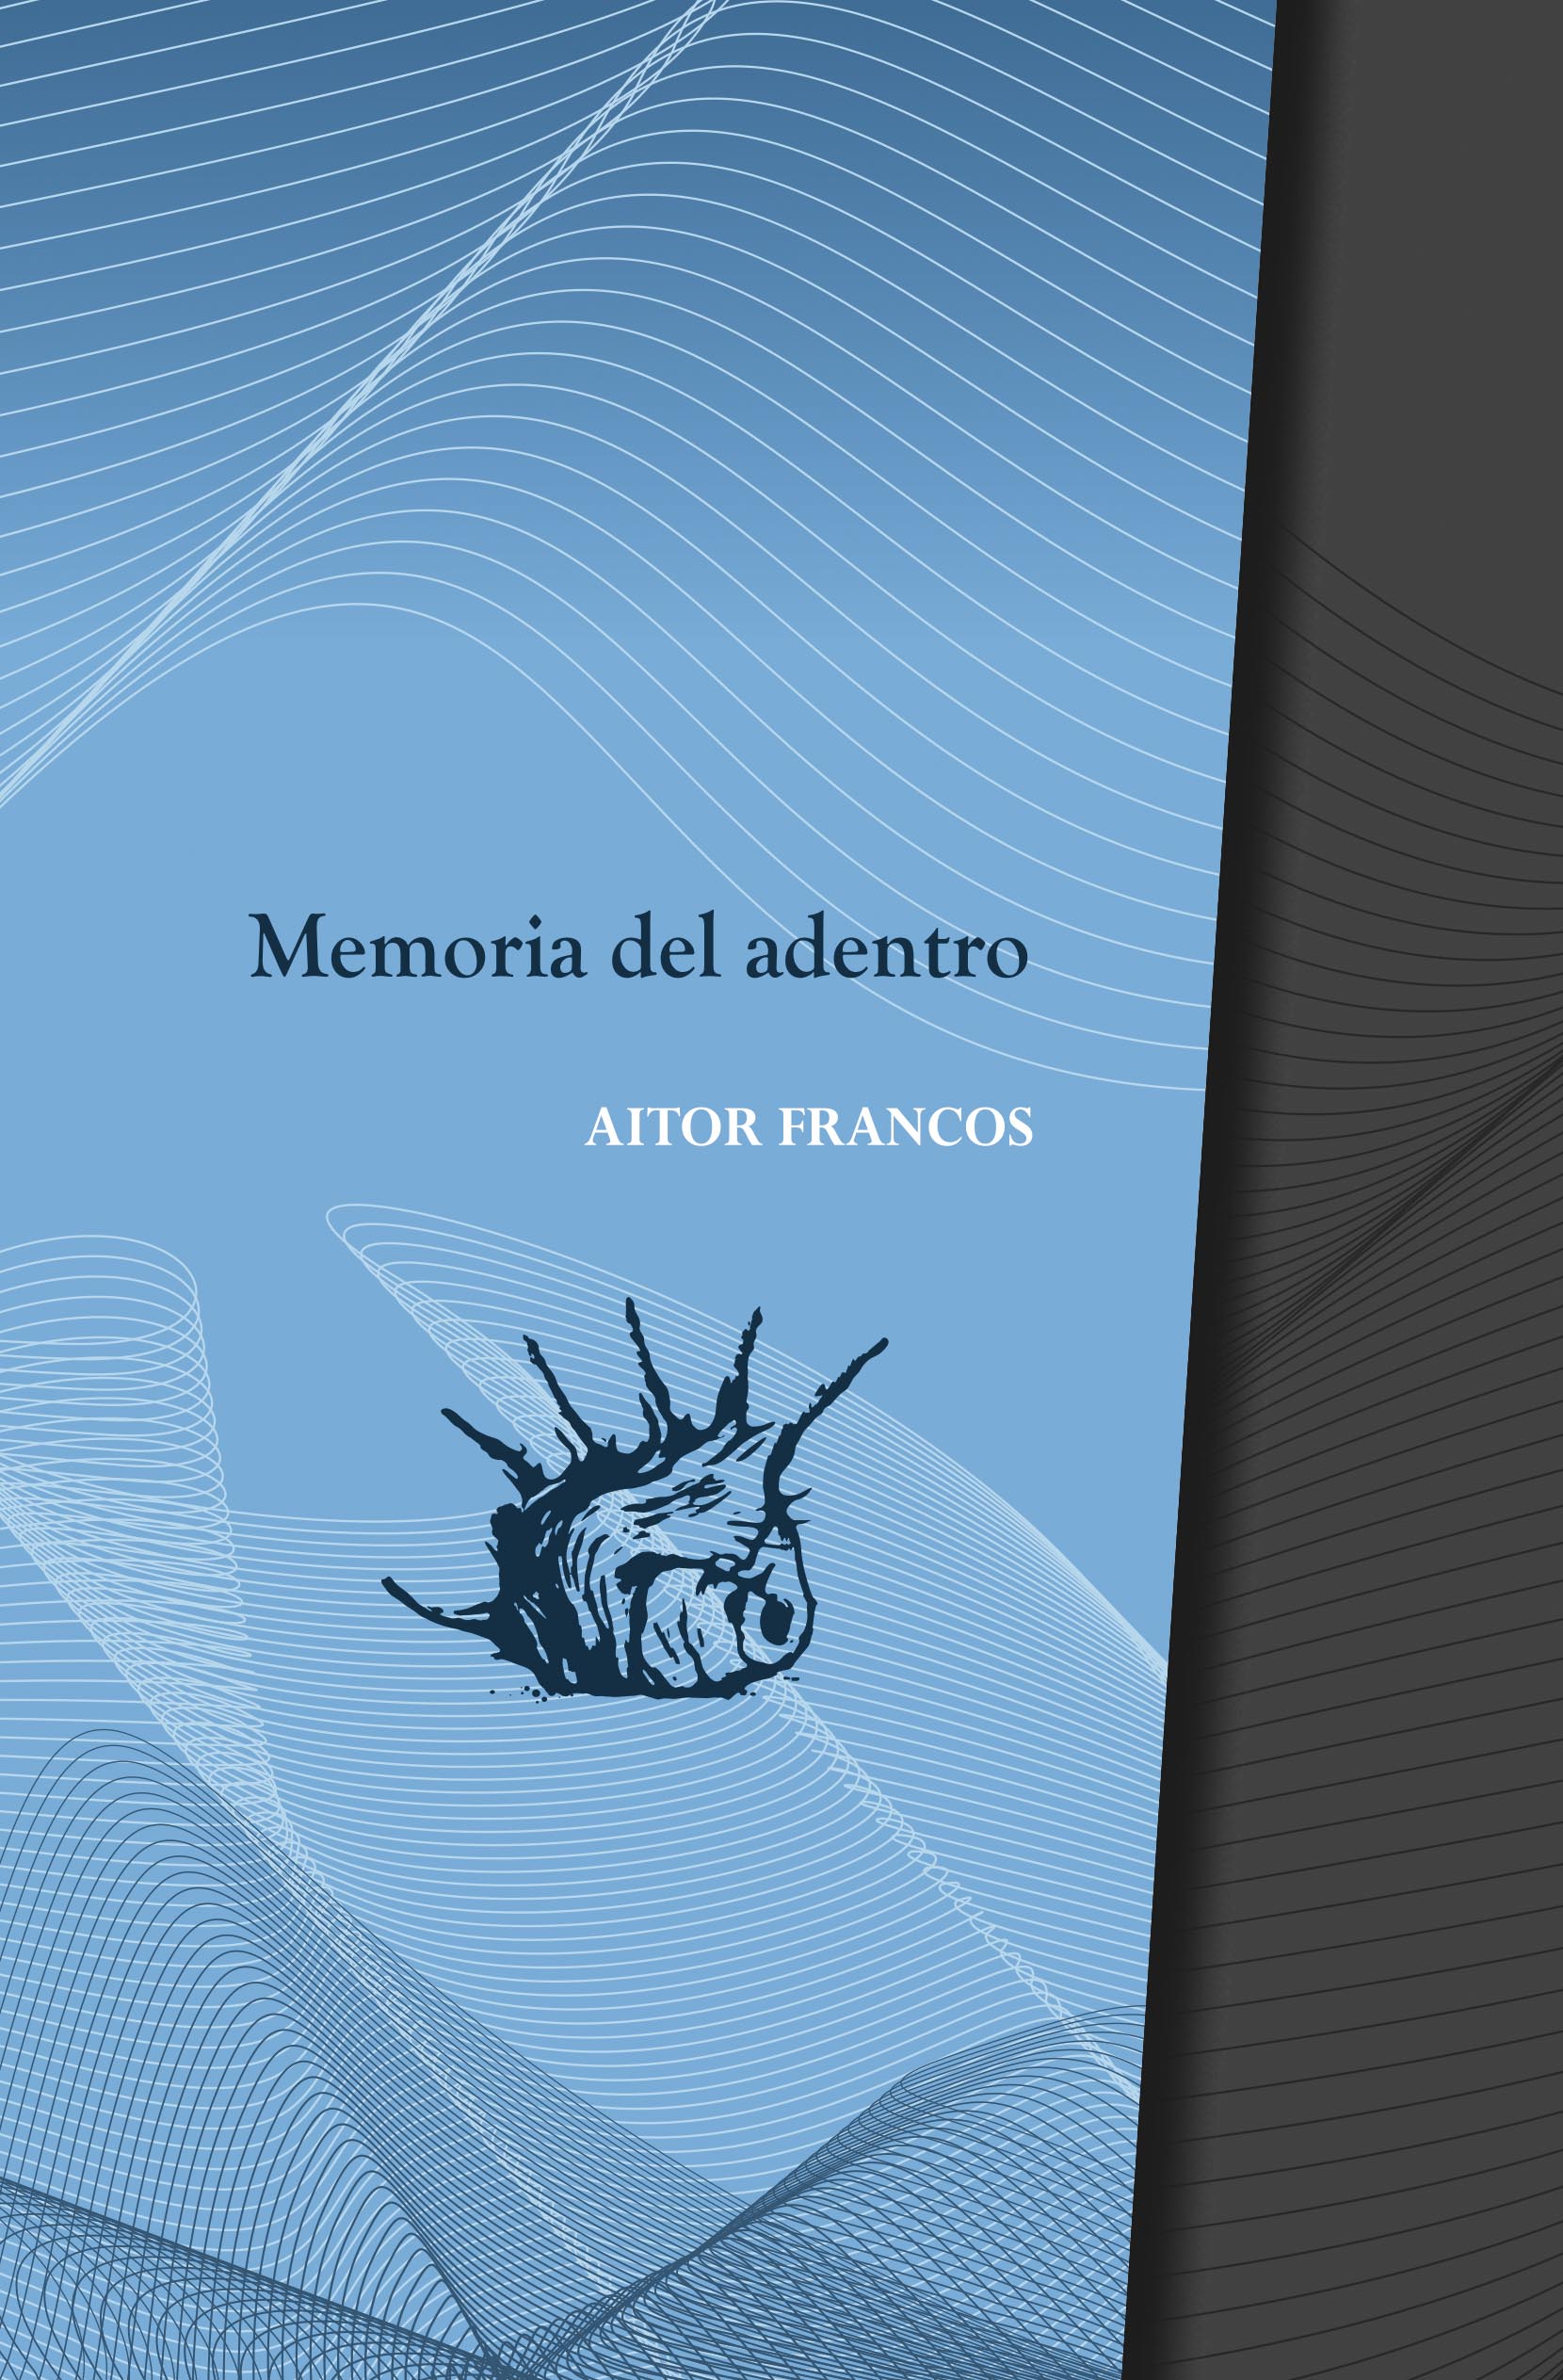 Memoria del adentro - Aitor Francos | La Garúa Poesía